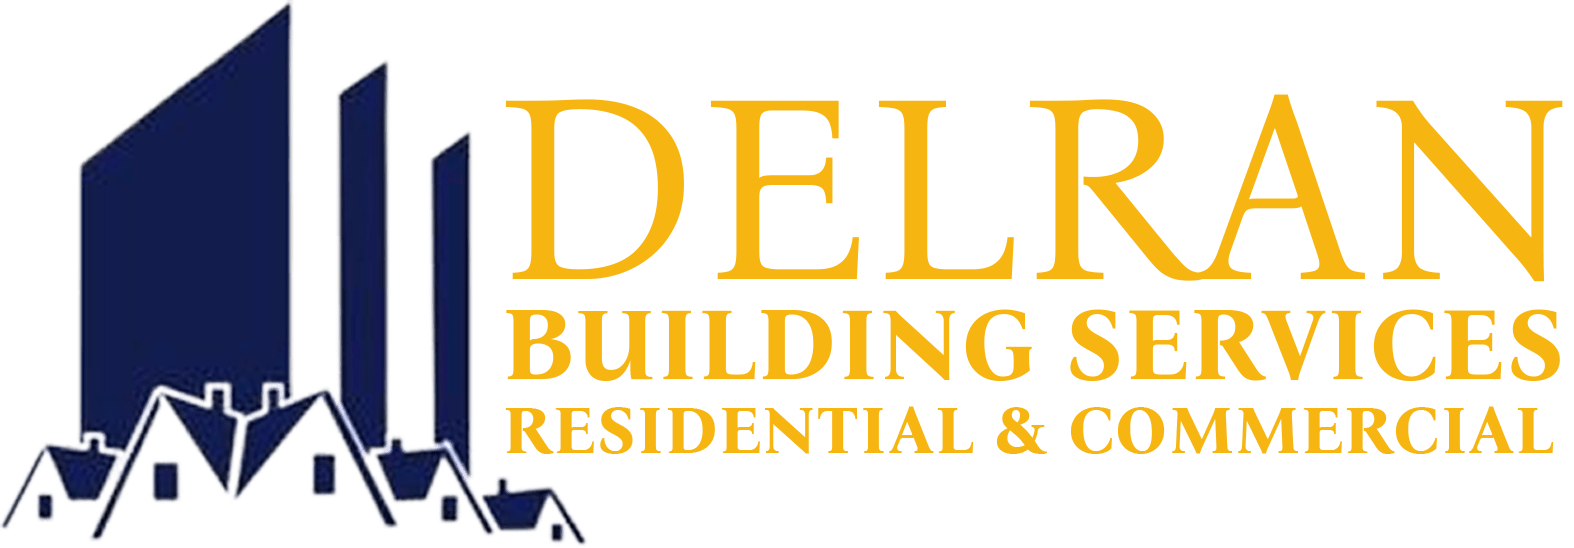 delran building services logo